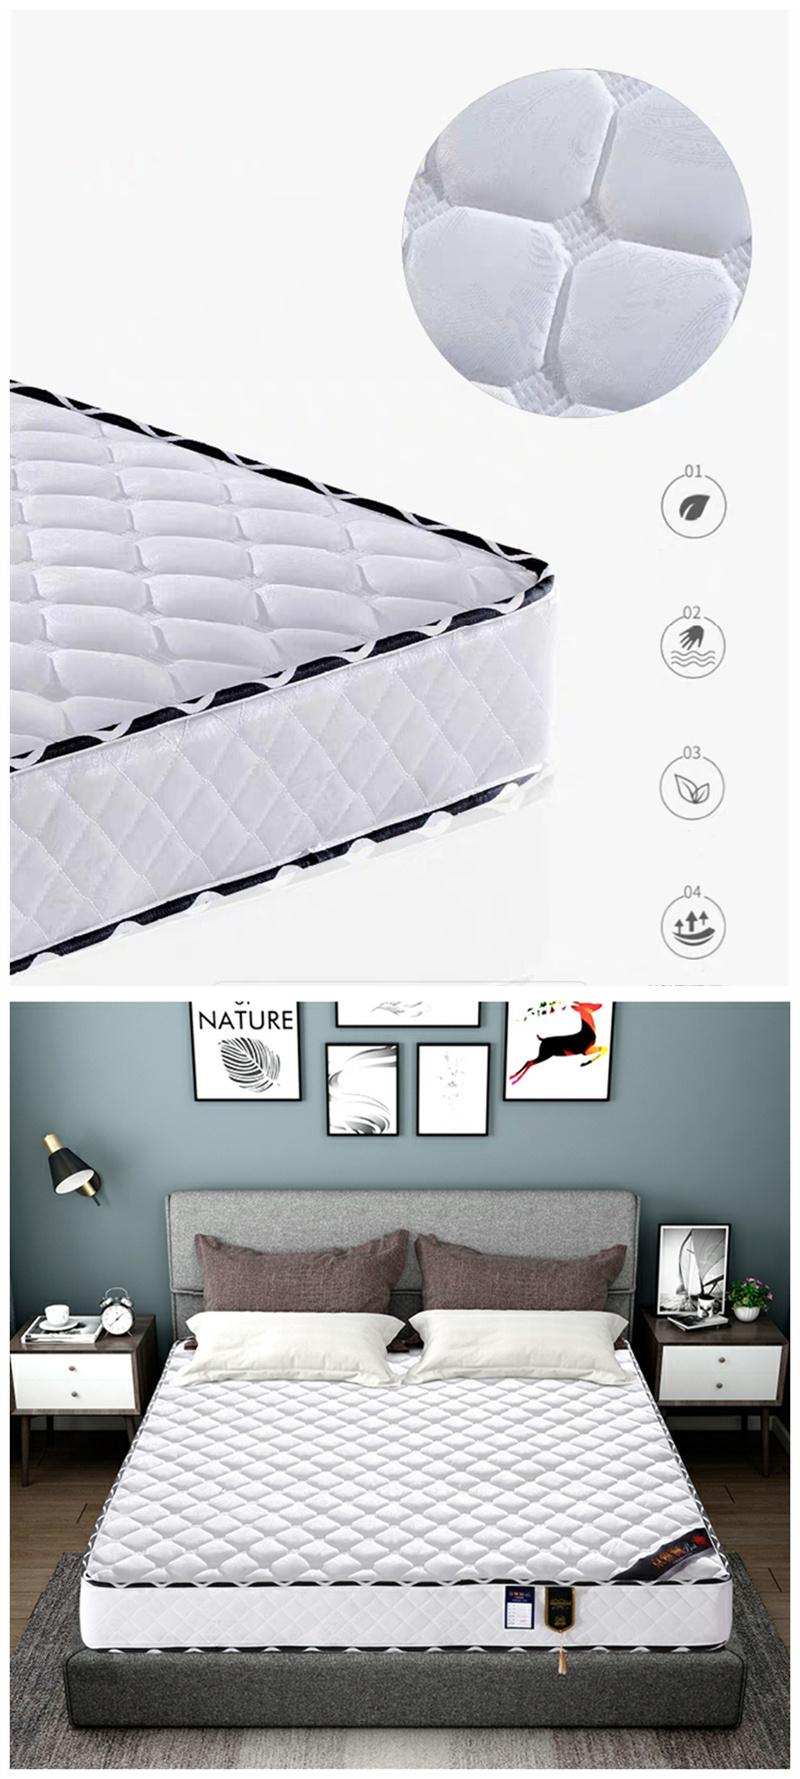 Bedroom Furniture Bed Mattresses Massage Pocket Spring Mattress